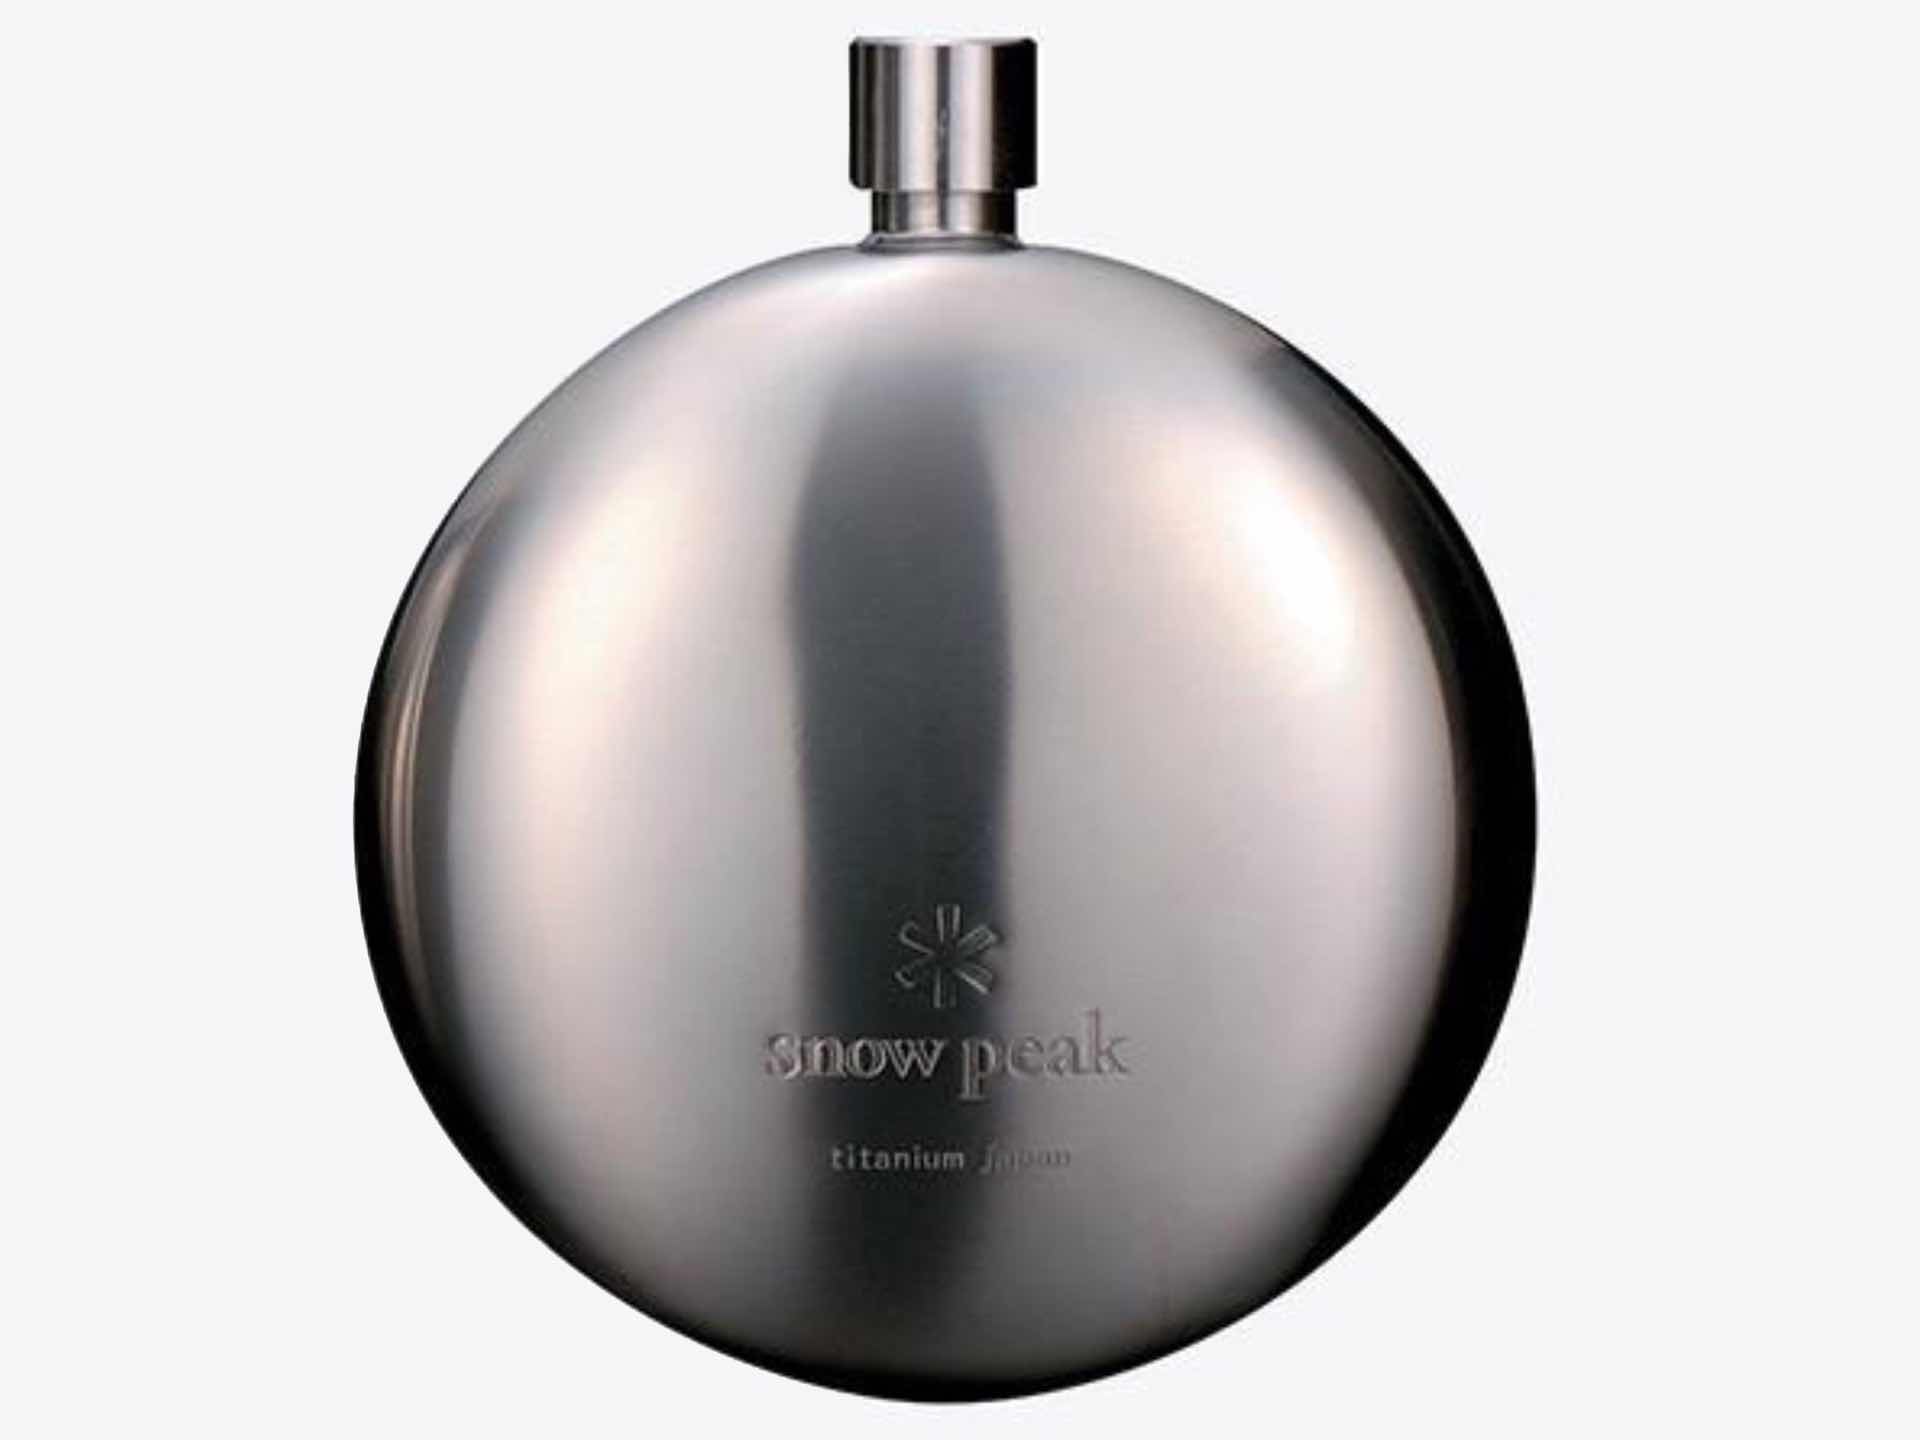 Snow Peak titanium curved flask. ($122)